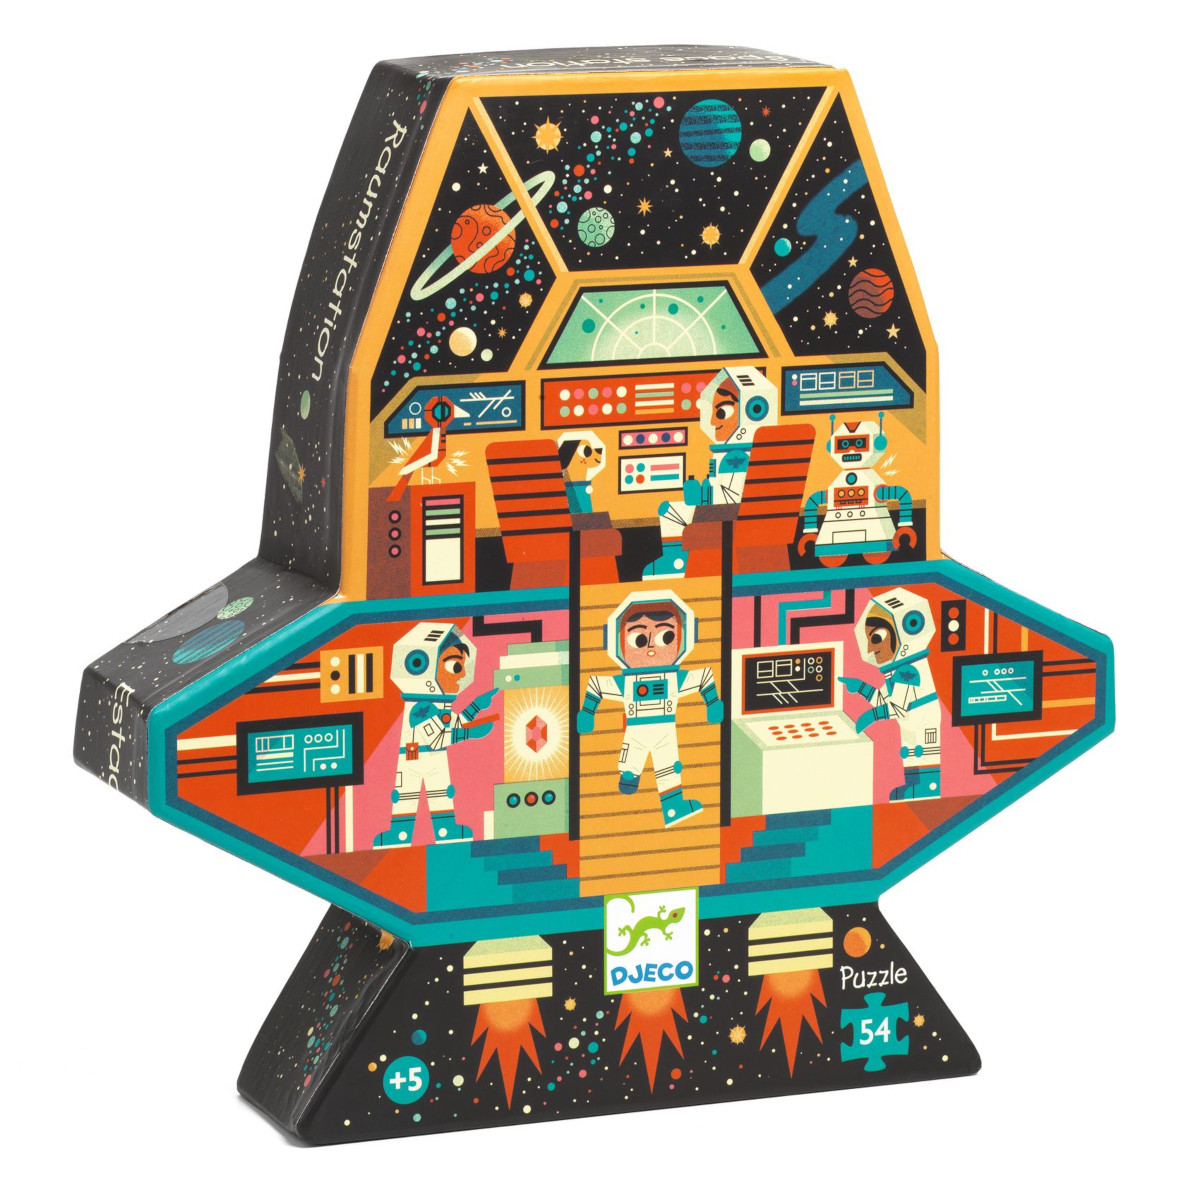 La Stazione Spaziale - Puzzle 54 pezzi - Djeco